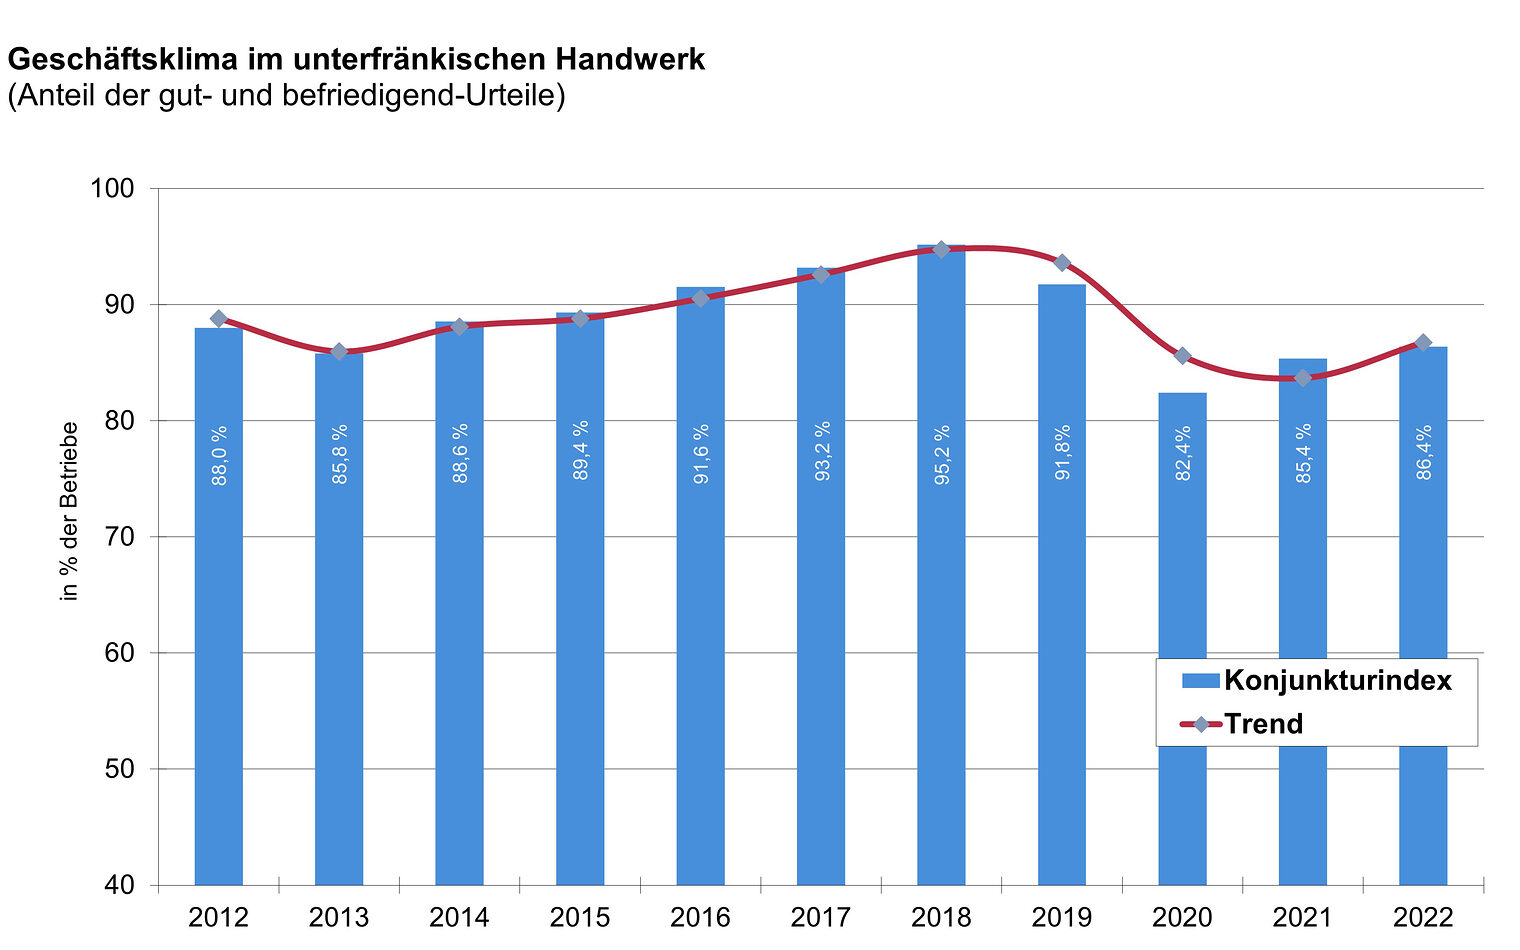 Geschäftsklima im unterfränkischen Handwerk - Entwicklung 2012 - 2022